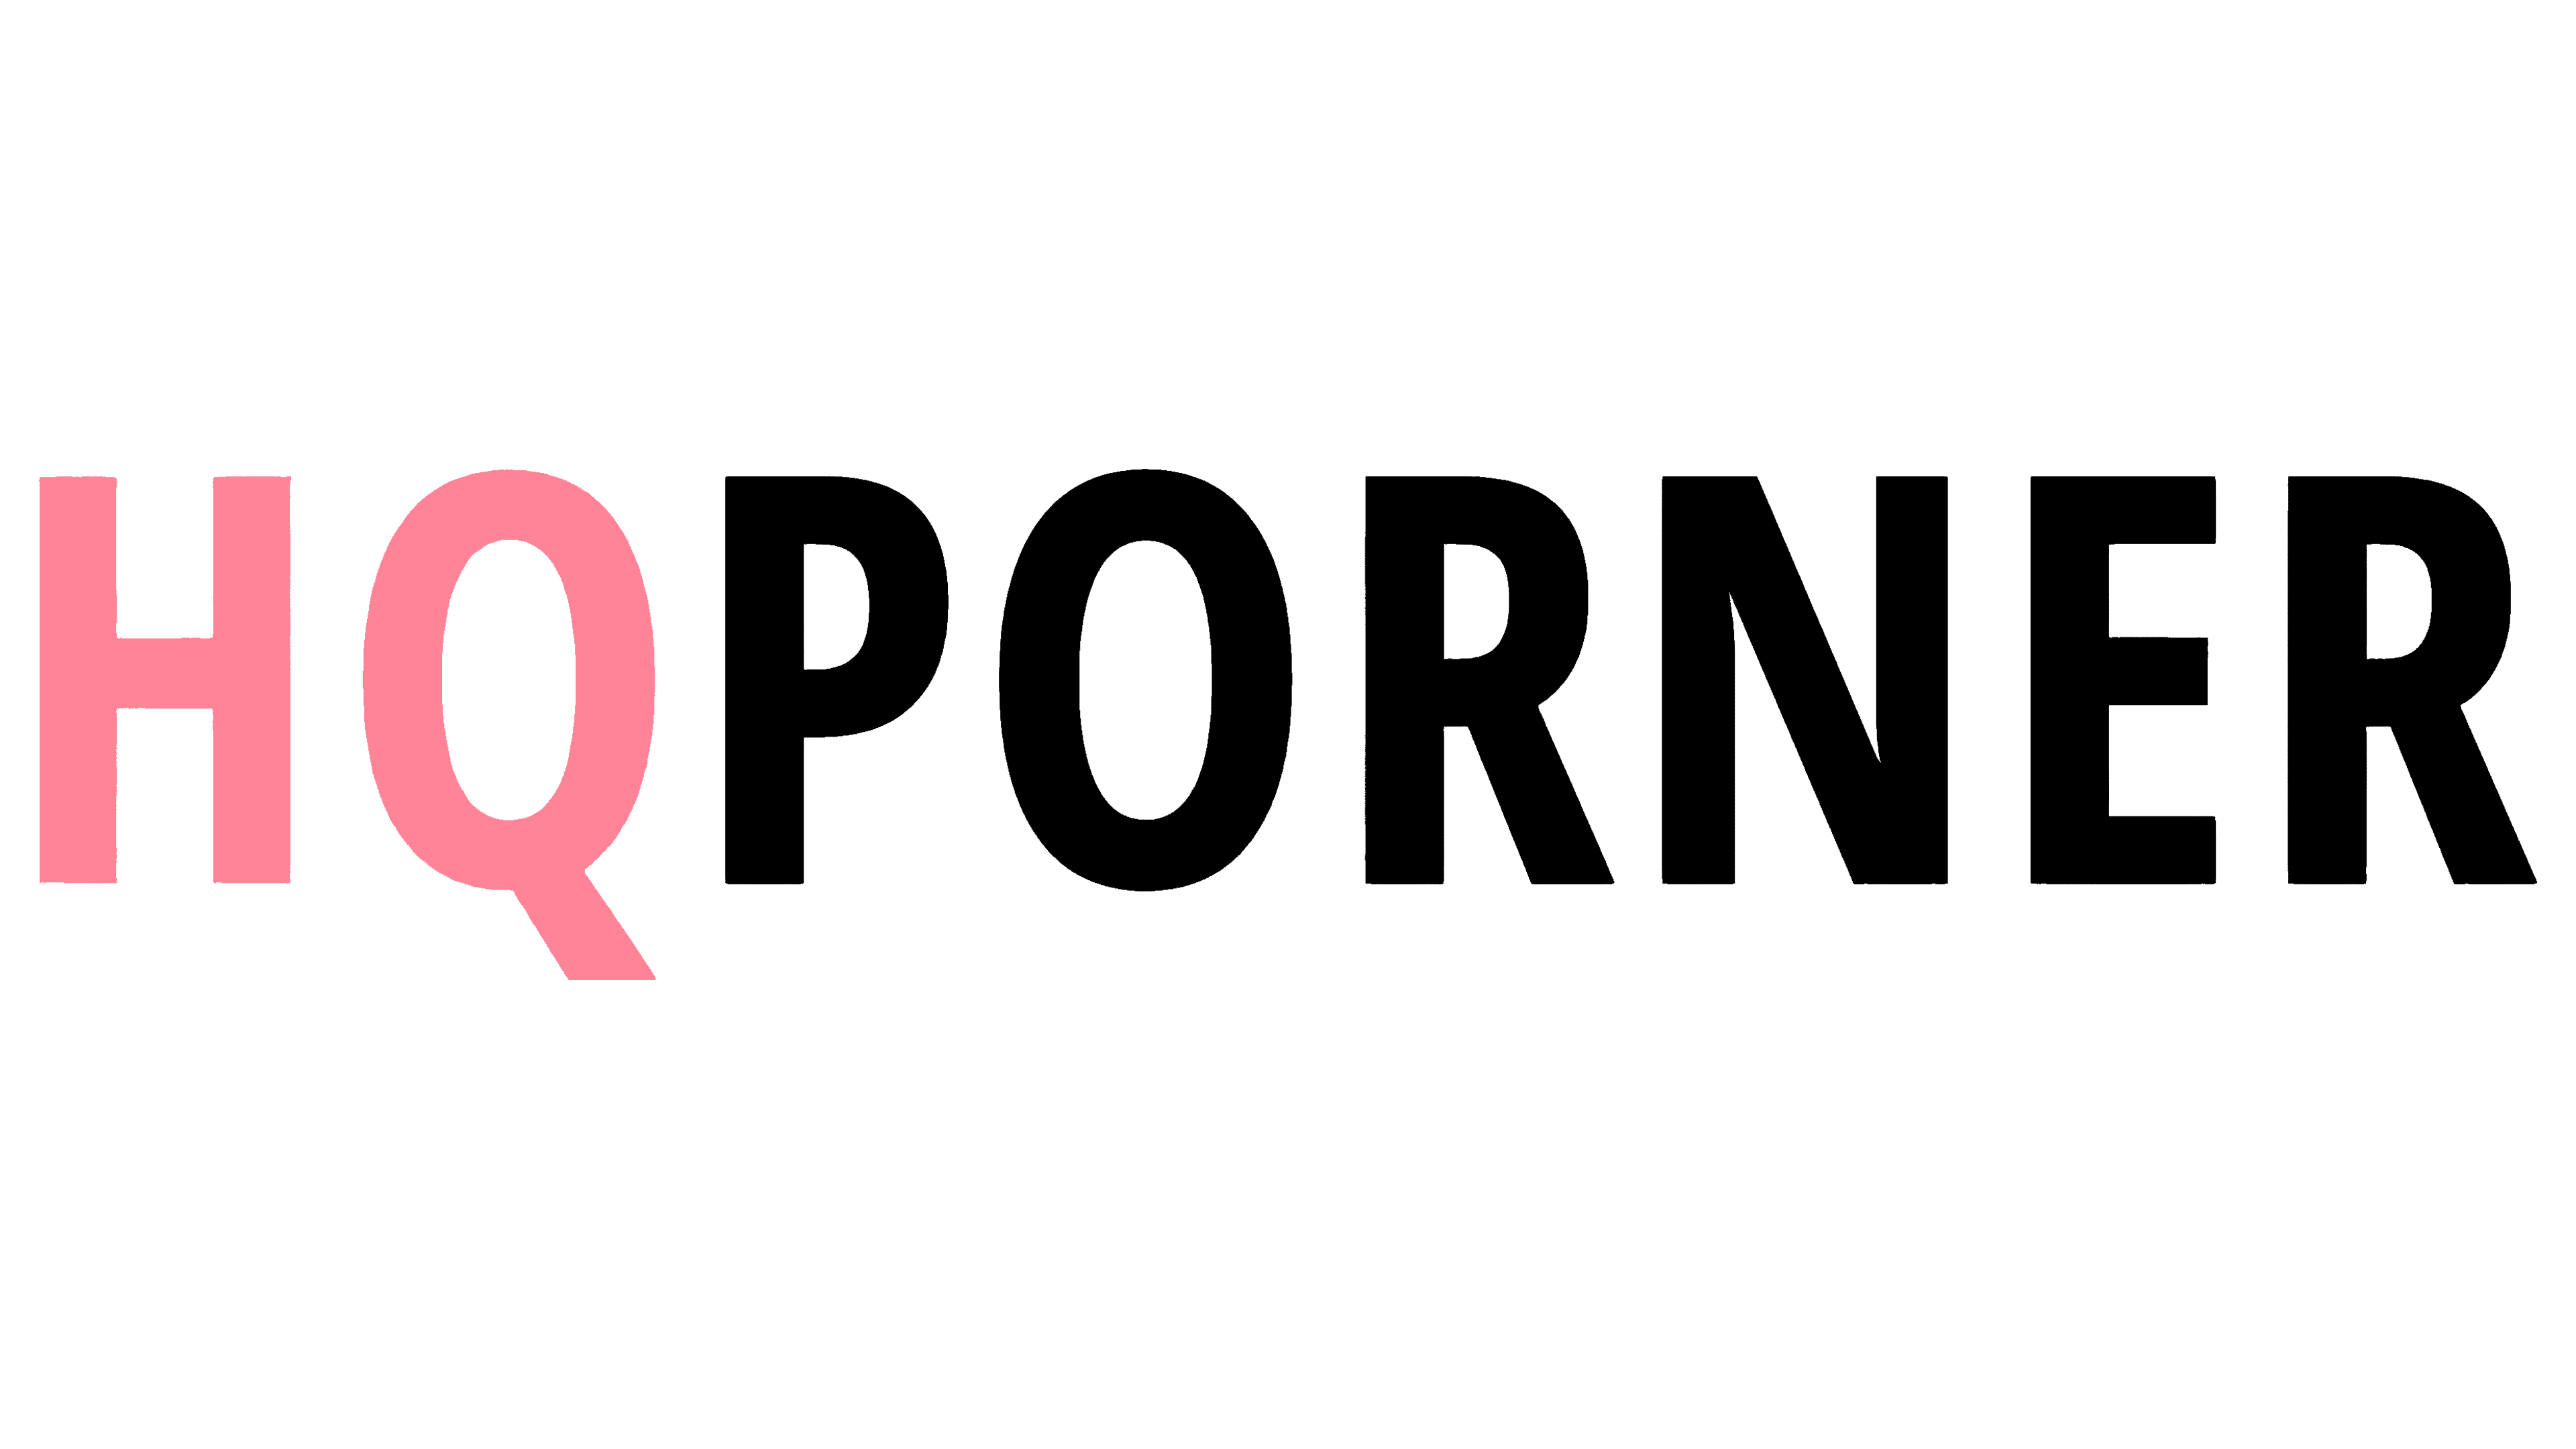 Hq Porner Com - HQPorner Logo, symbol, meaning, history, PNG, brand